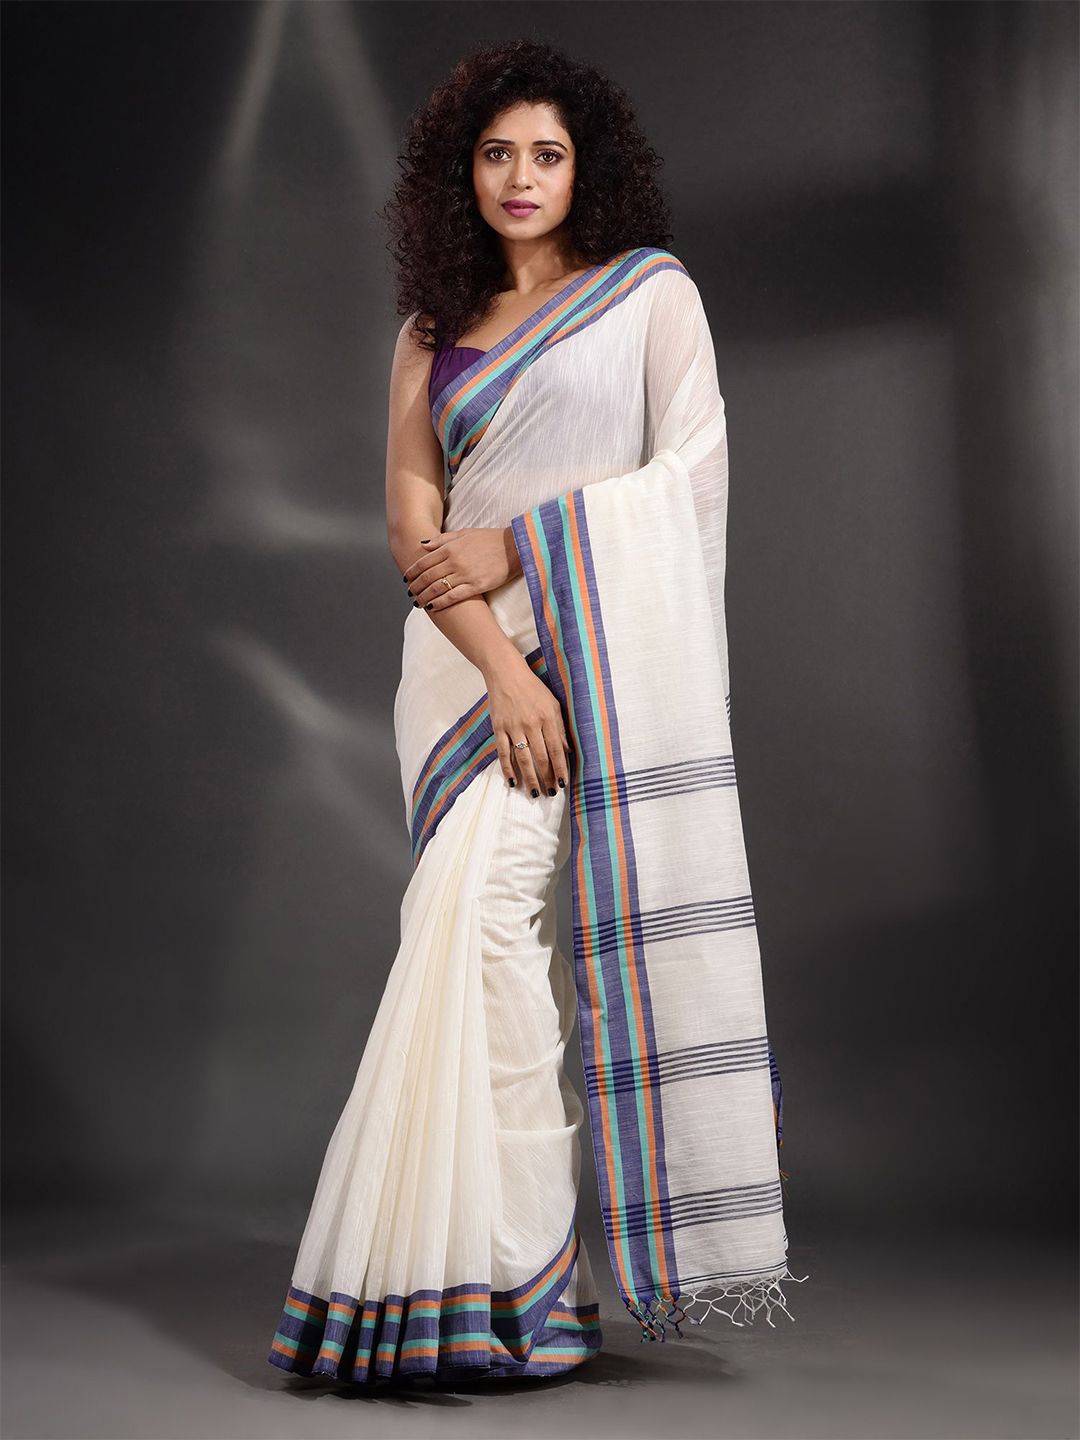 Arhi White & Purple Pure Cotton Saree Price in India